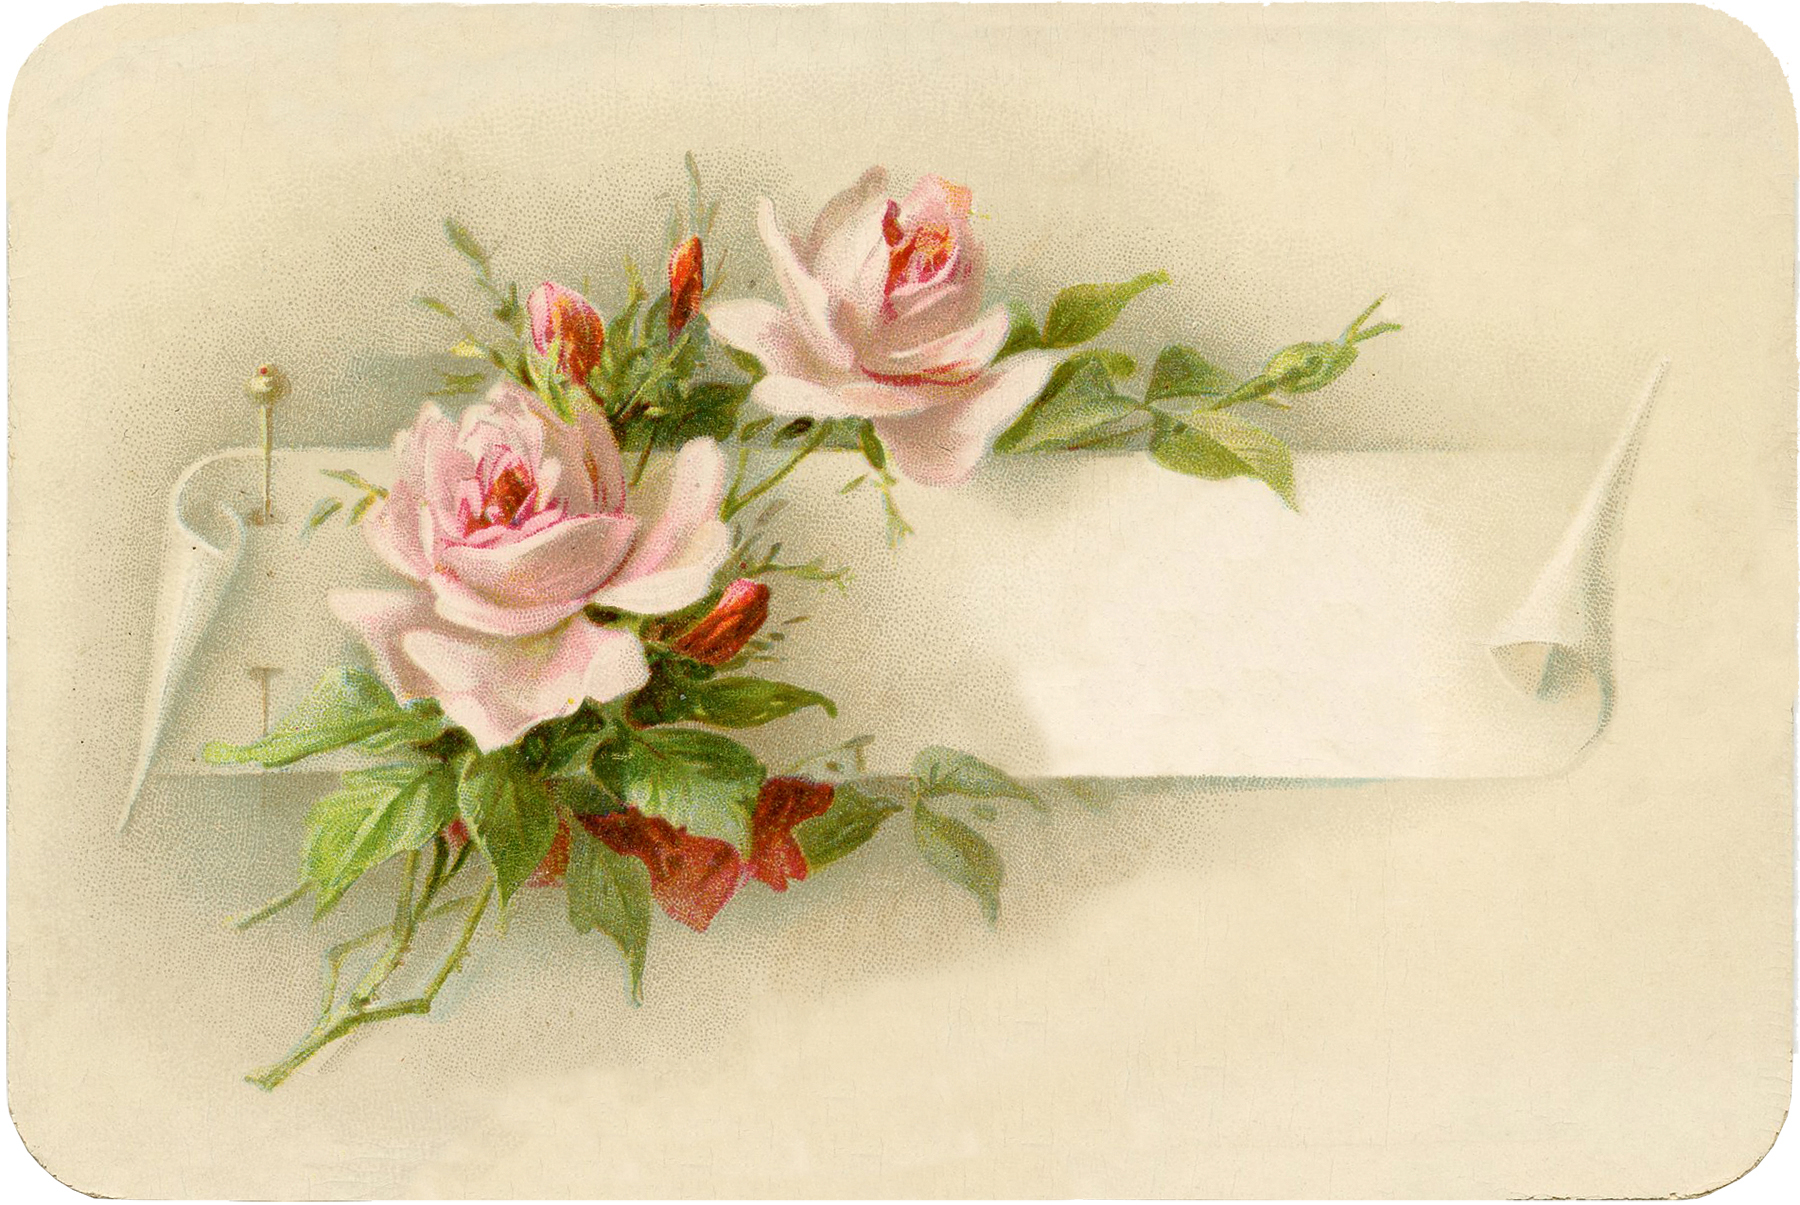 Vintage Roses Images 2